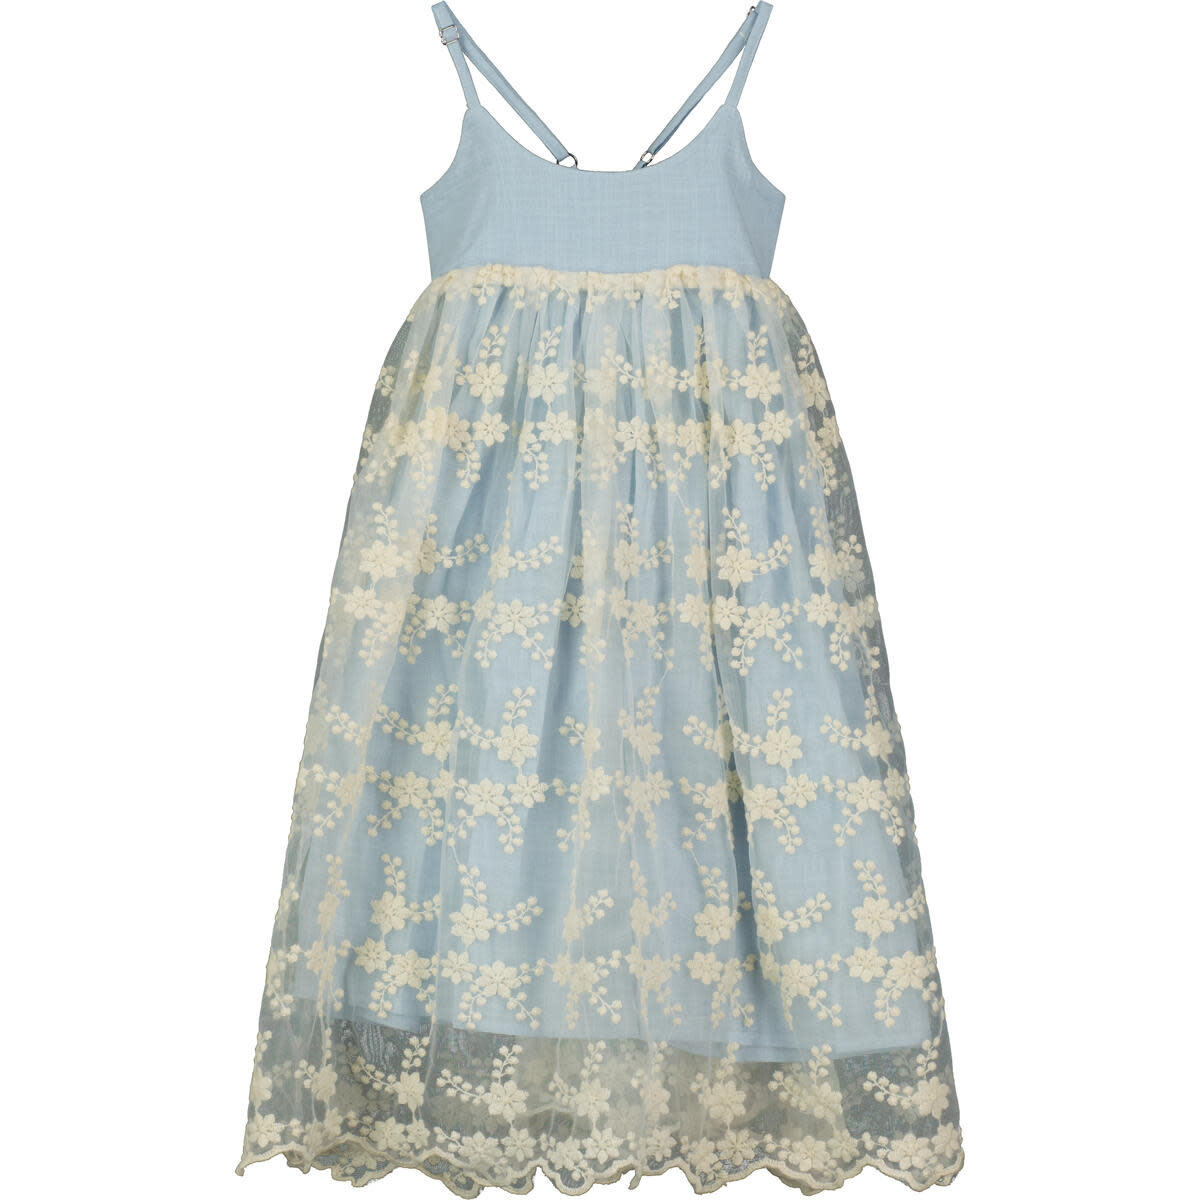 Vignette Girl's Reversible Dress